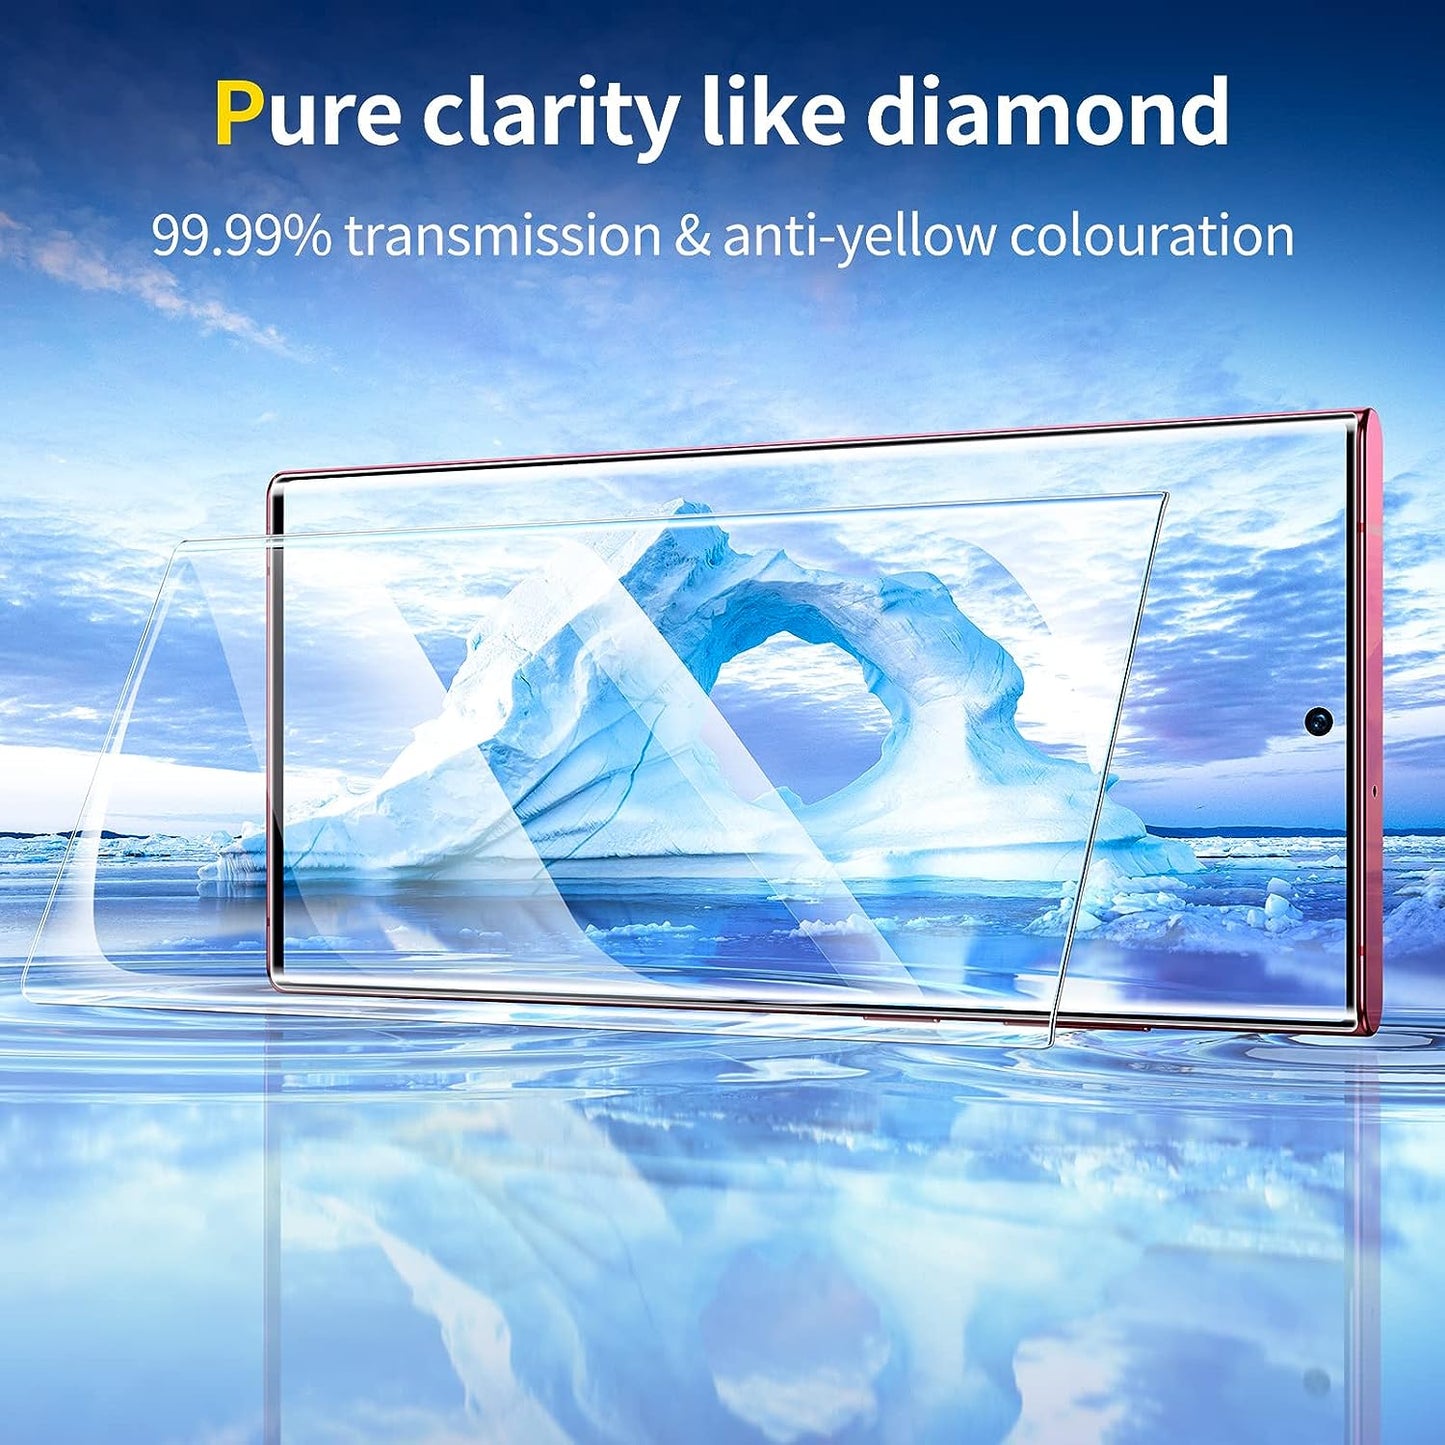 SMARTDEVIL [3+3] Kompatibel mit Samsung Galaxy S22 Ultra 5G-kompatiblem Displayschutz mit digitalen Displayschutzfolien, automatische Reparatur-Blasen-Displayschutzfolie, hochwertiges TPU-Material